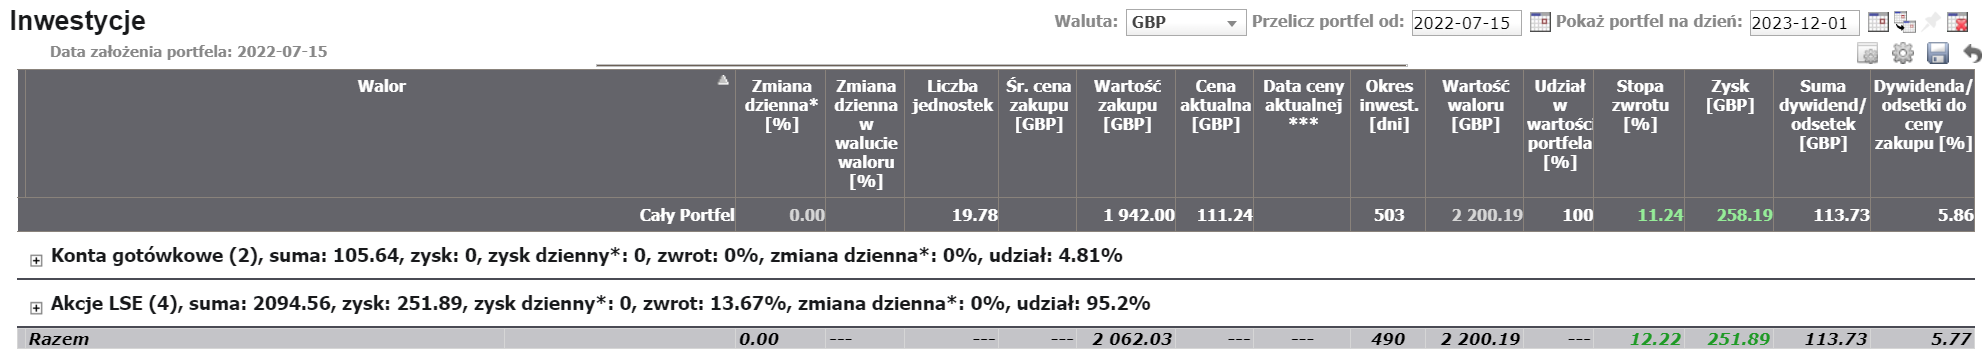 Dywidendy w Bogatyalbobiedny.pl. Portfel brytyjski - całkowita stopa zwrotu (kapitał + dywidendy)